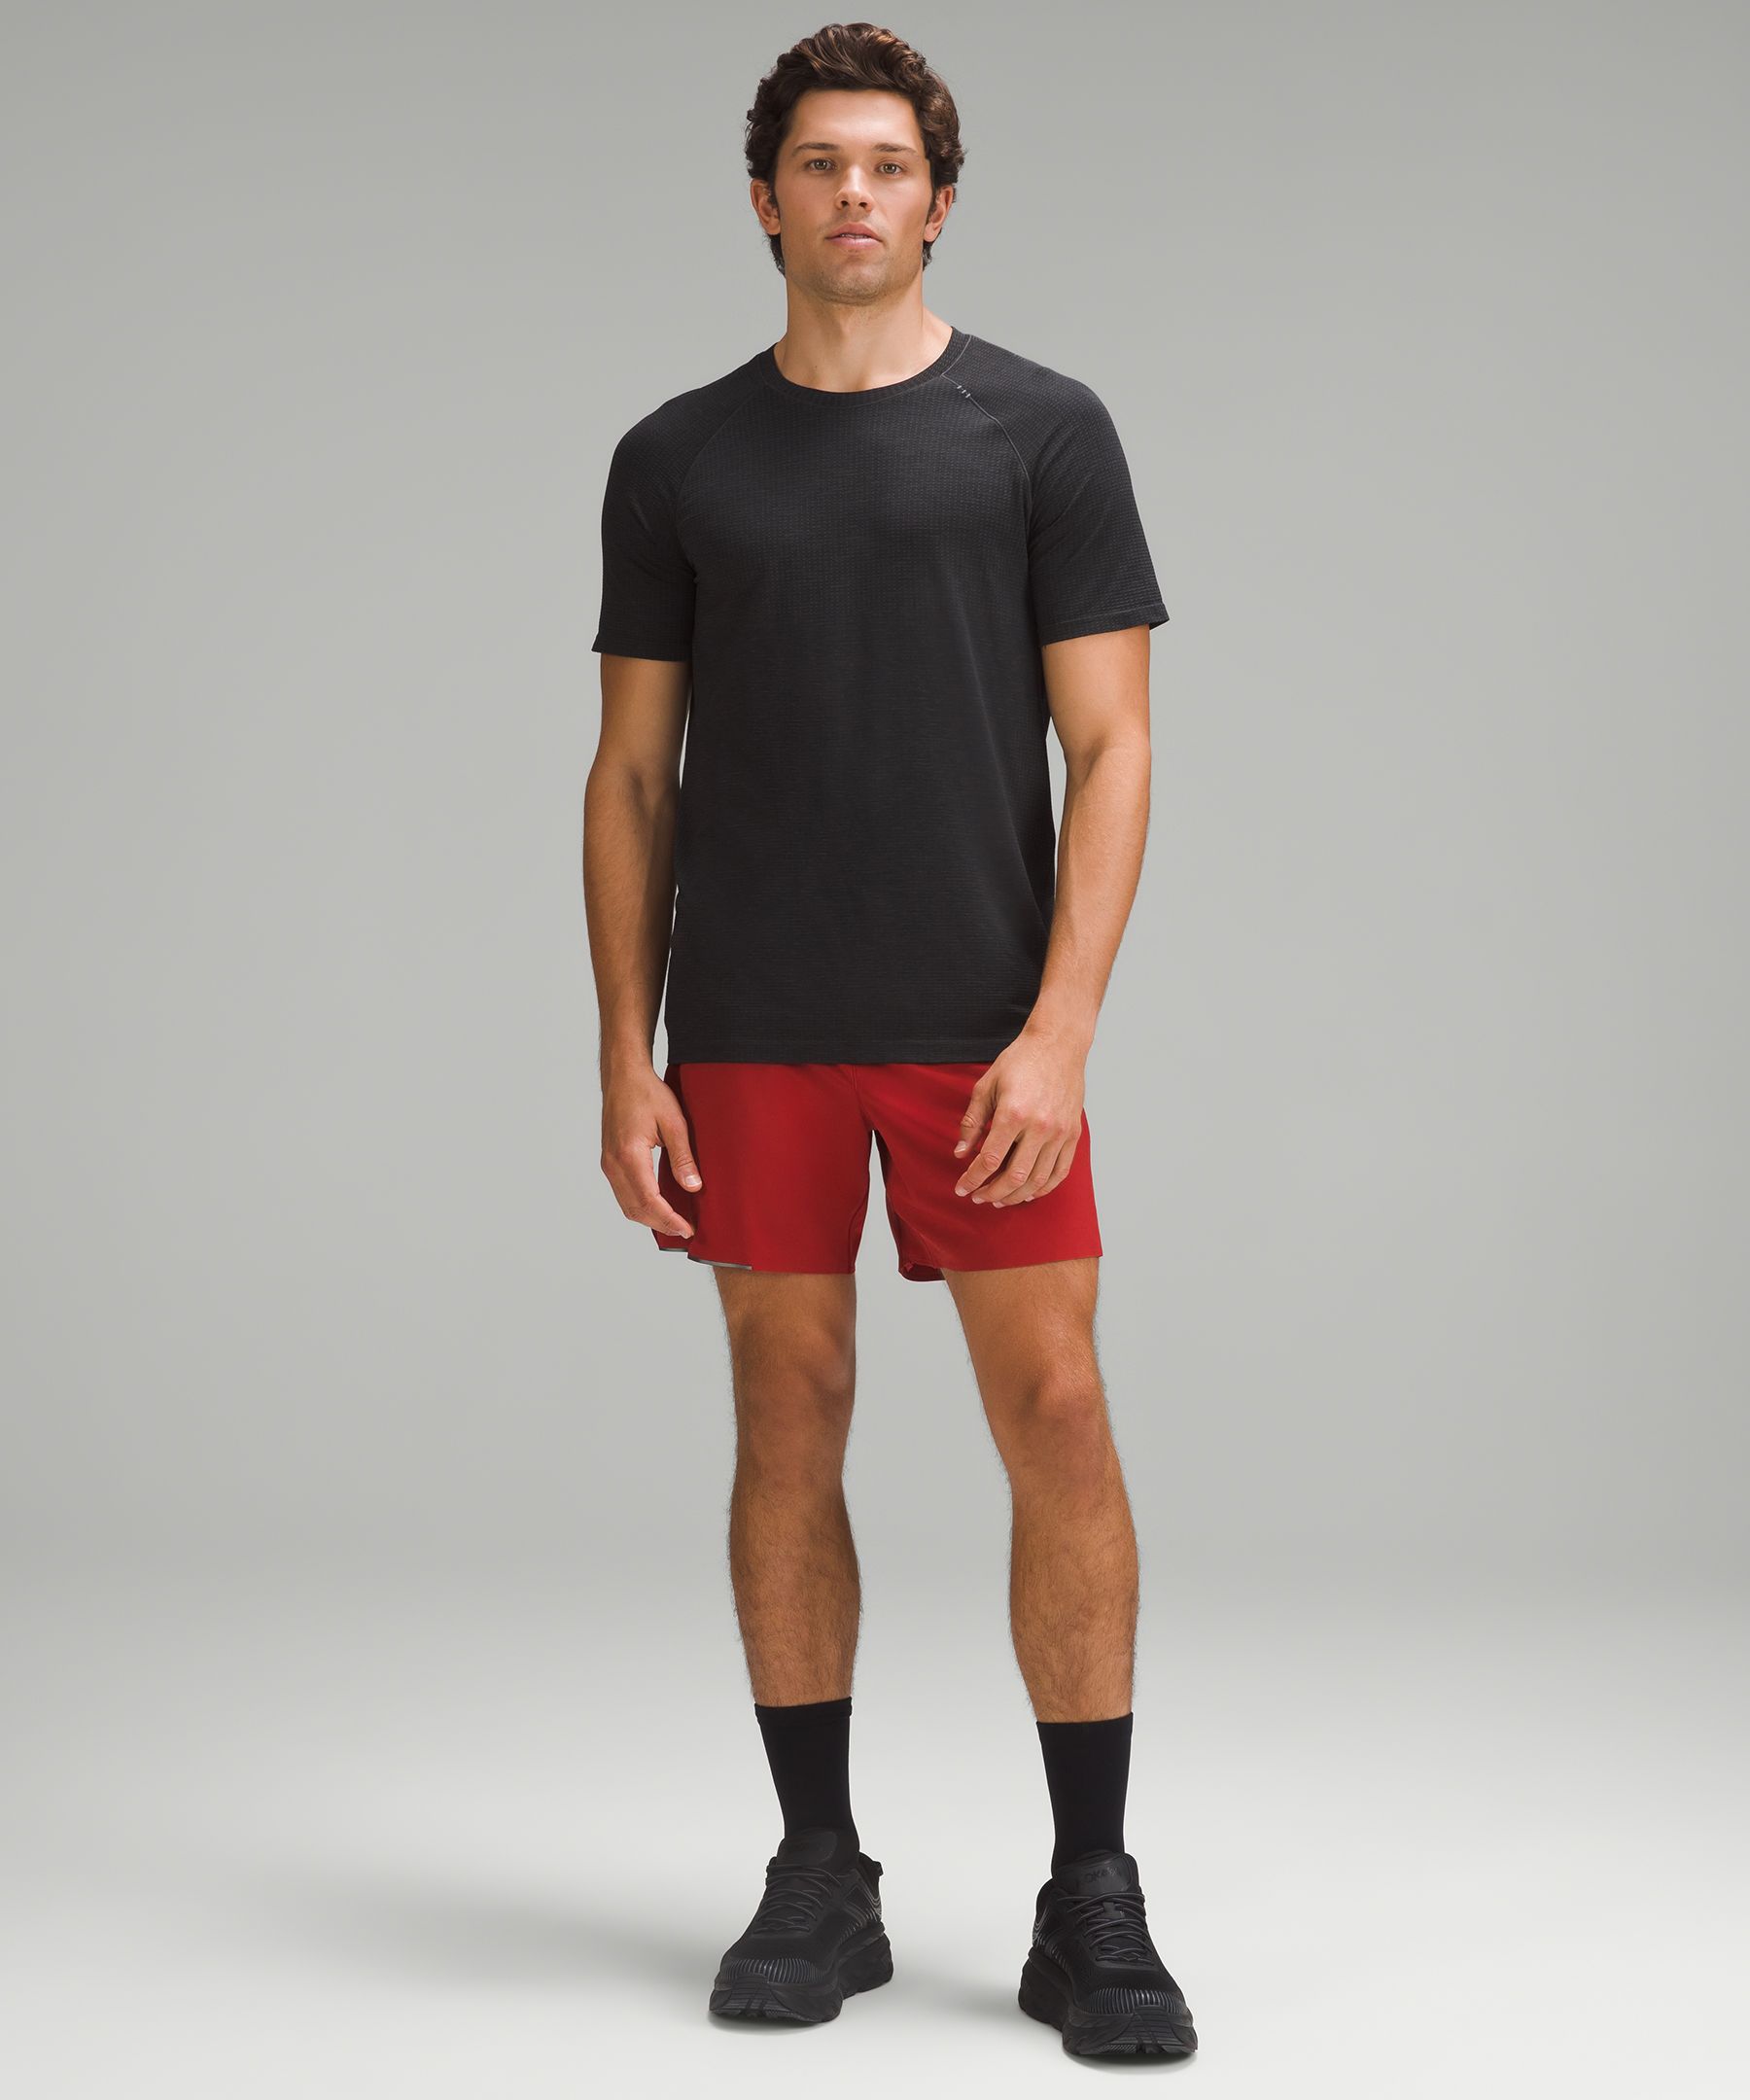 Men's 6 Inch Inseam Shorts